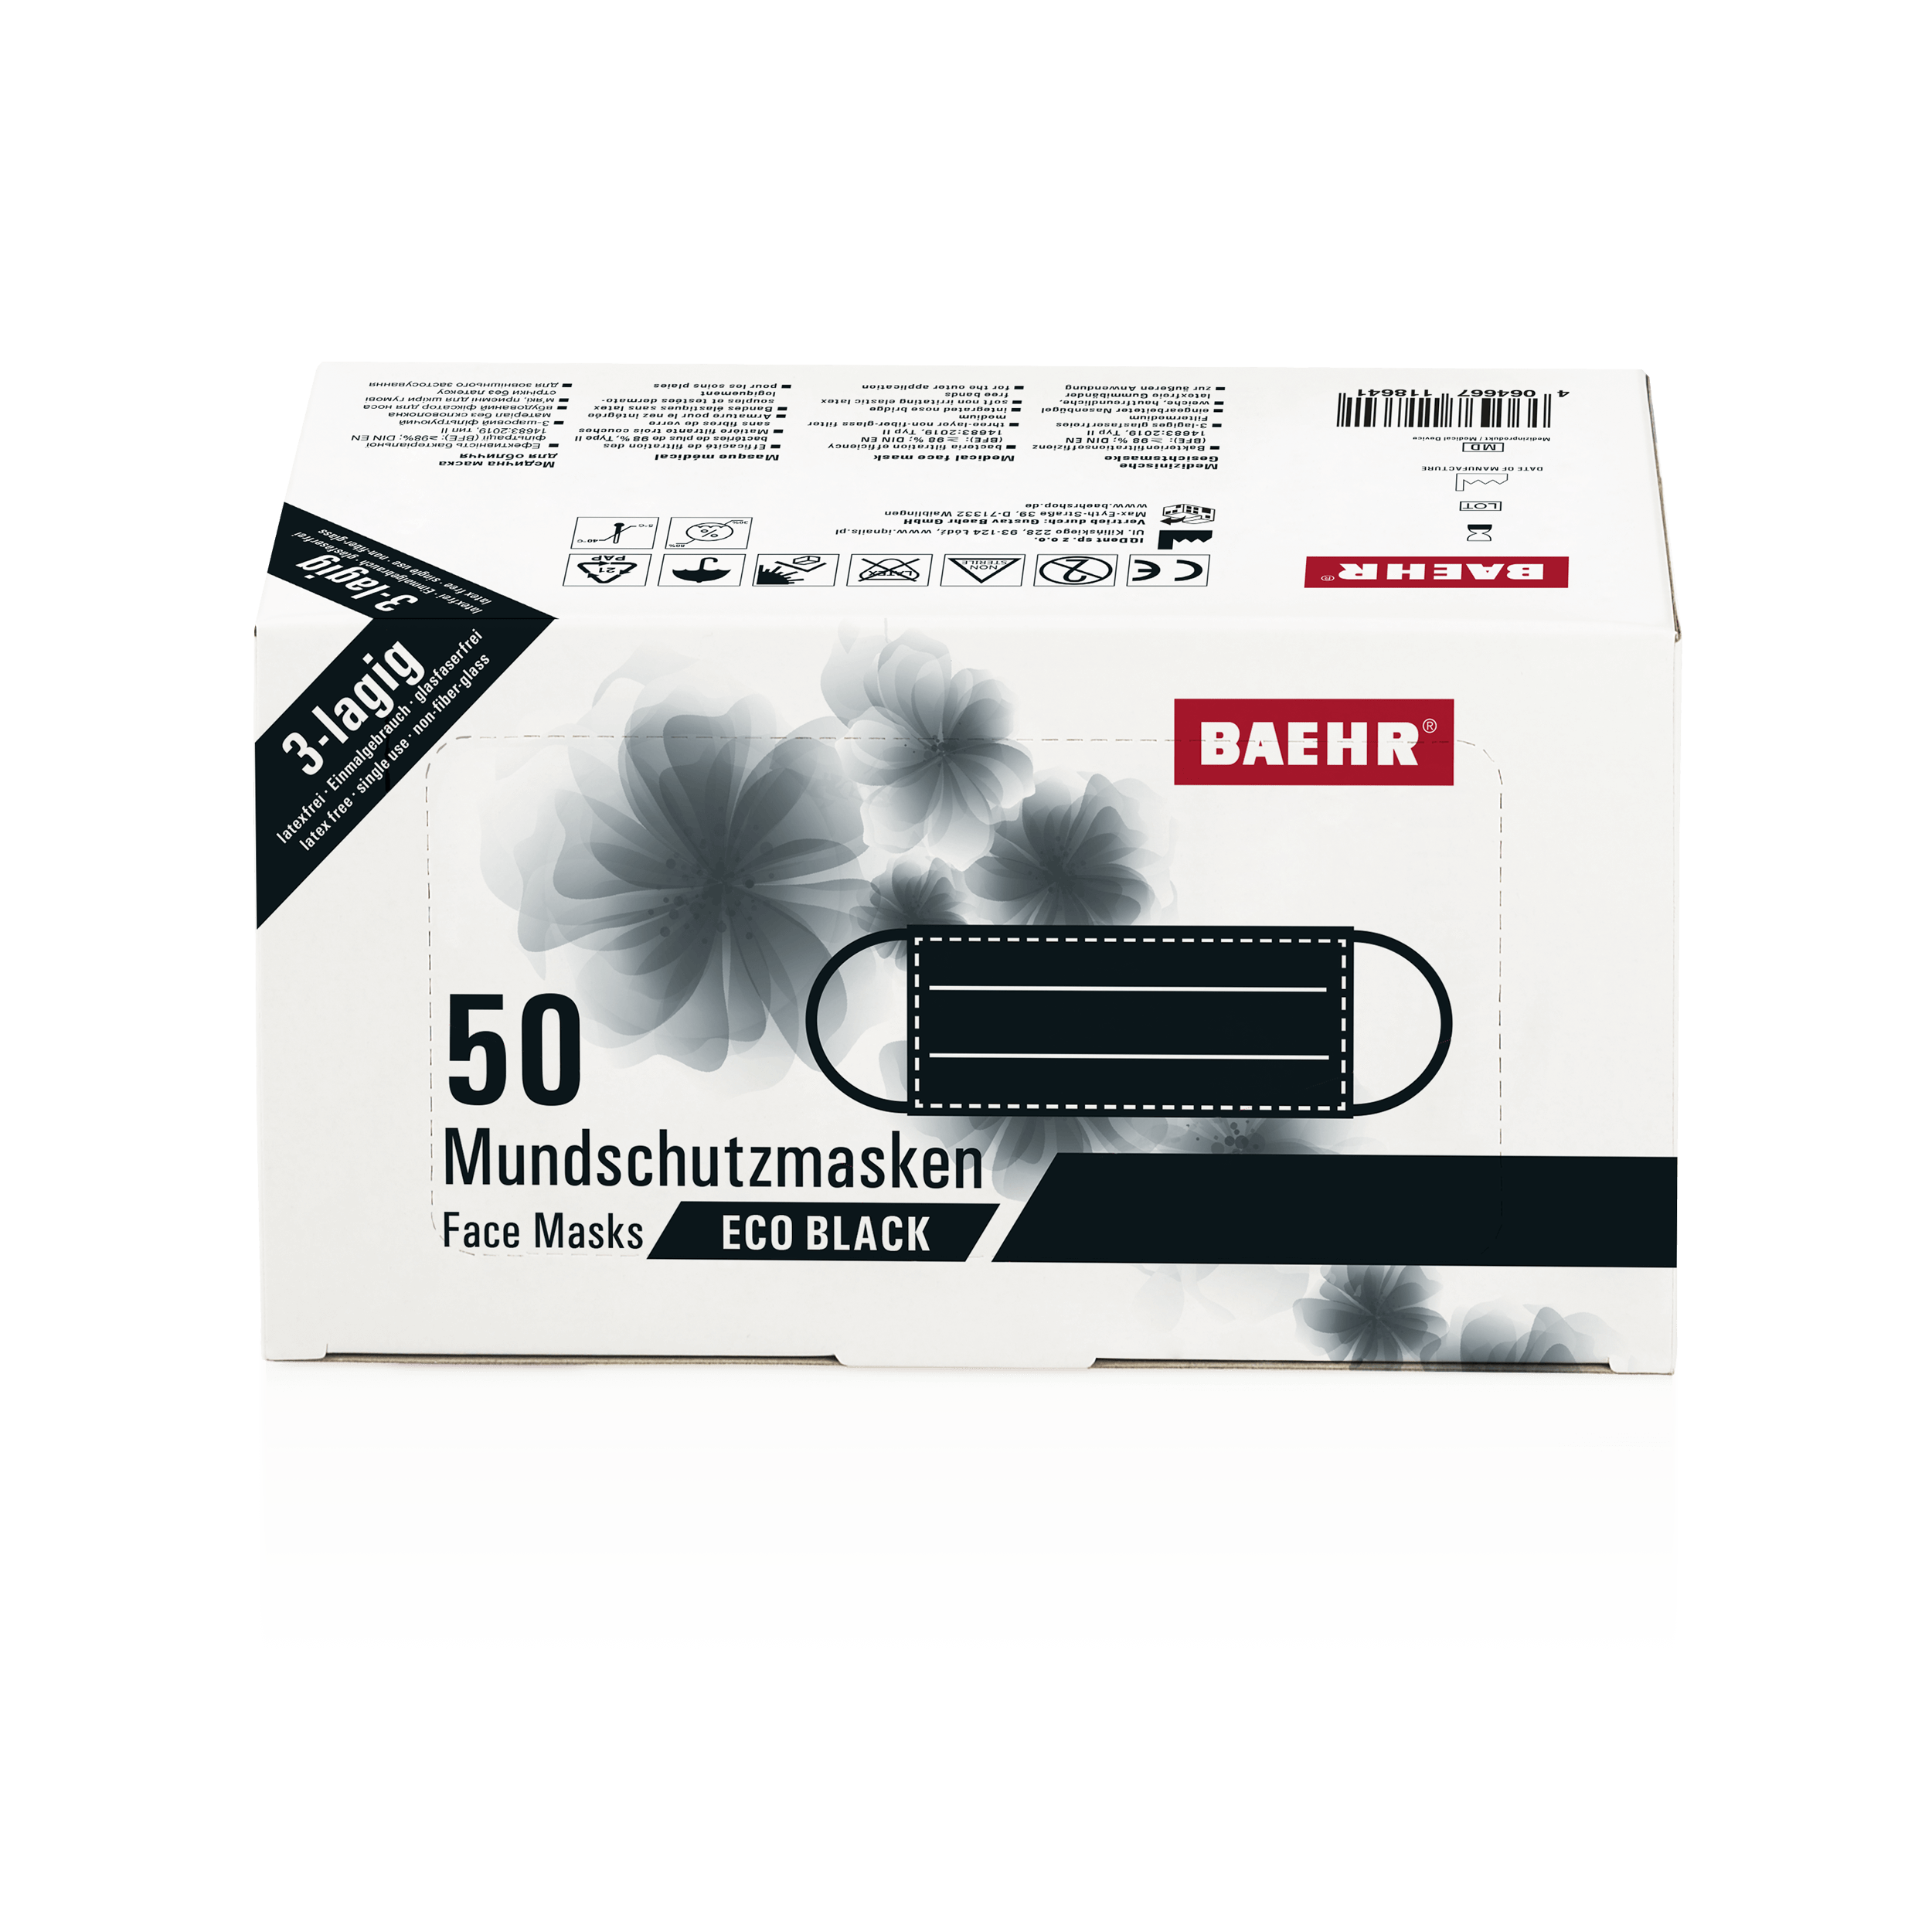 BAEHR Mundschutzmasken ECO BLACK, 1 Pack (50 Stück)